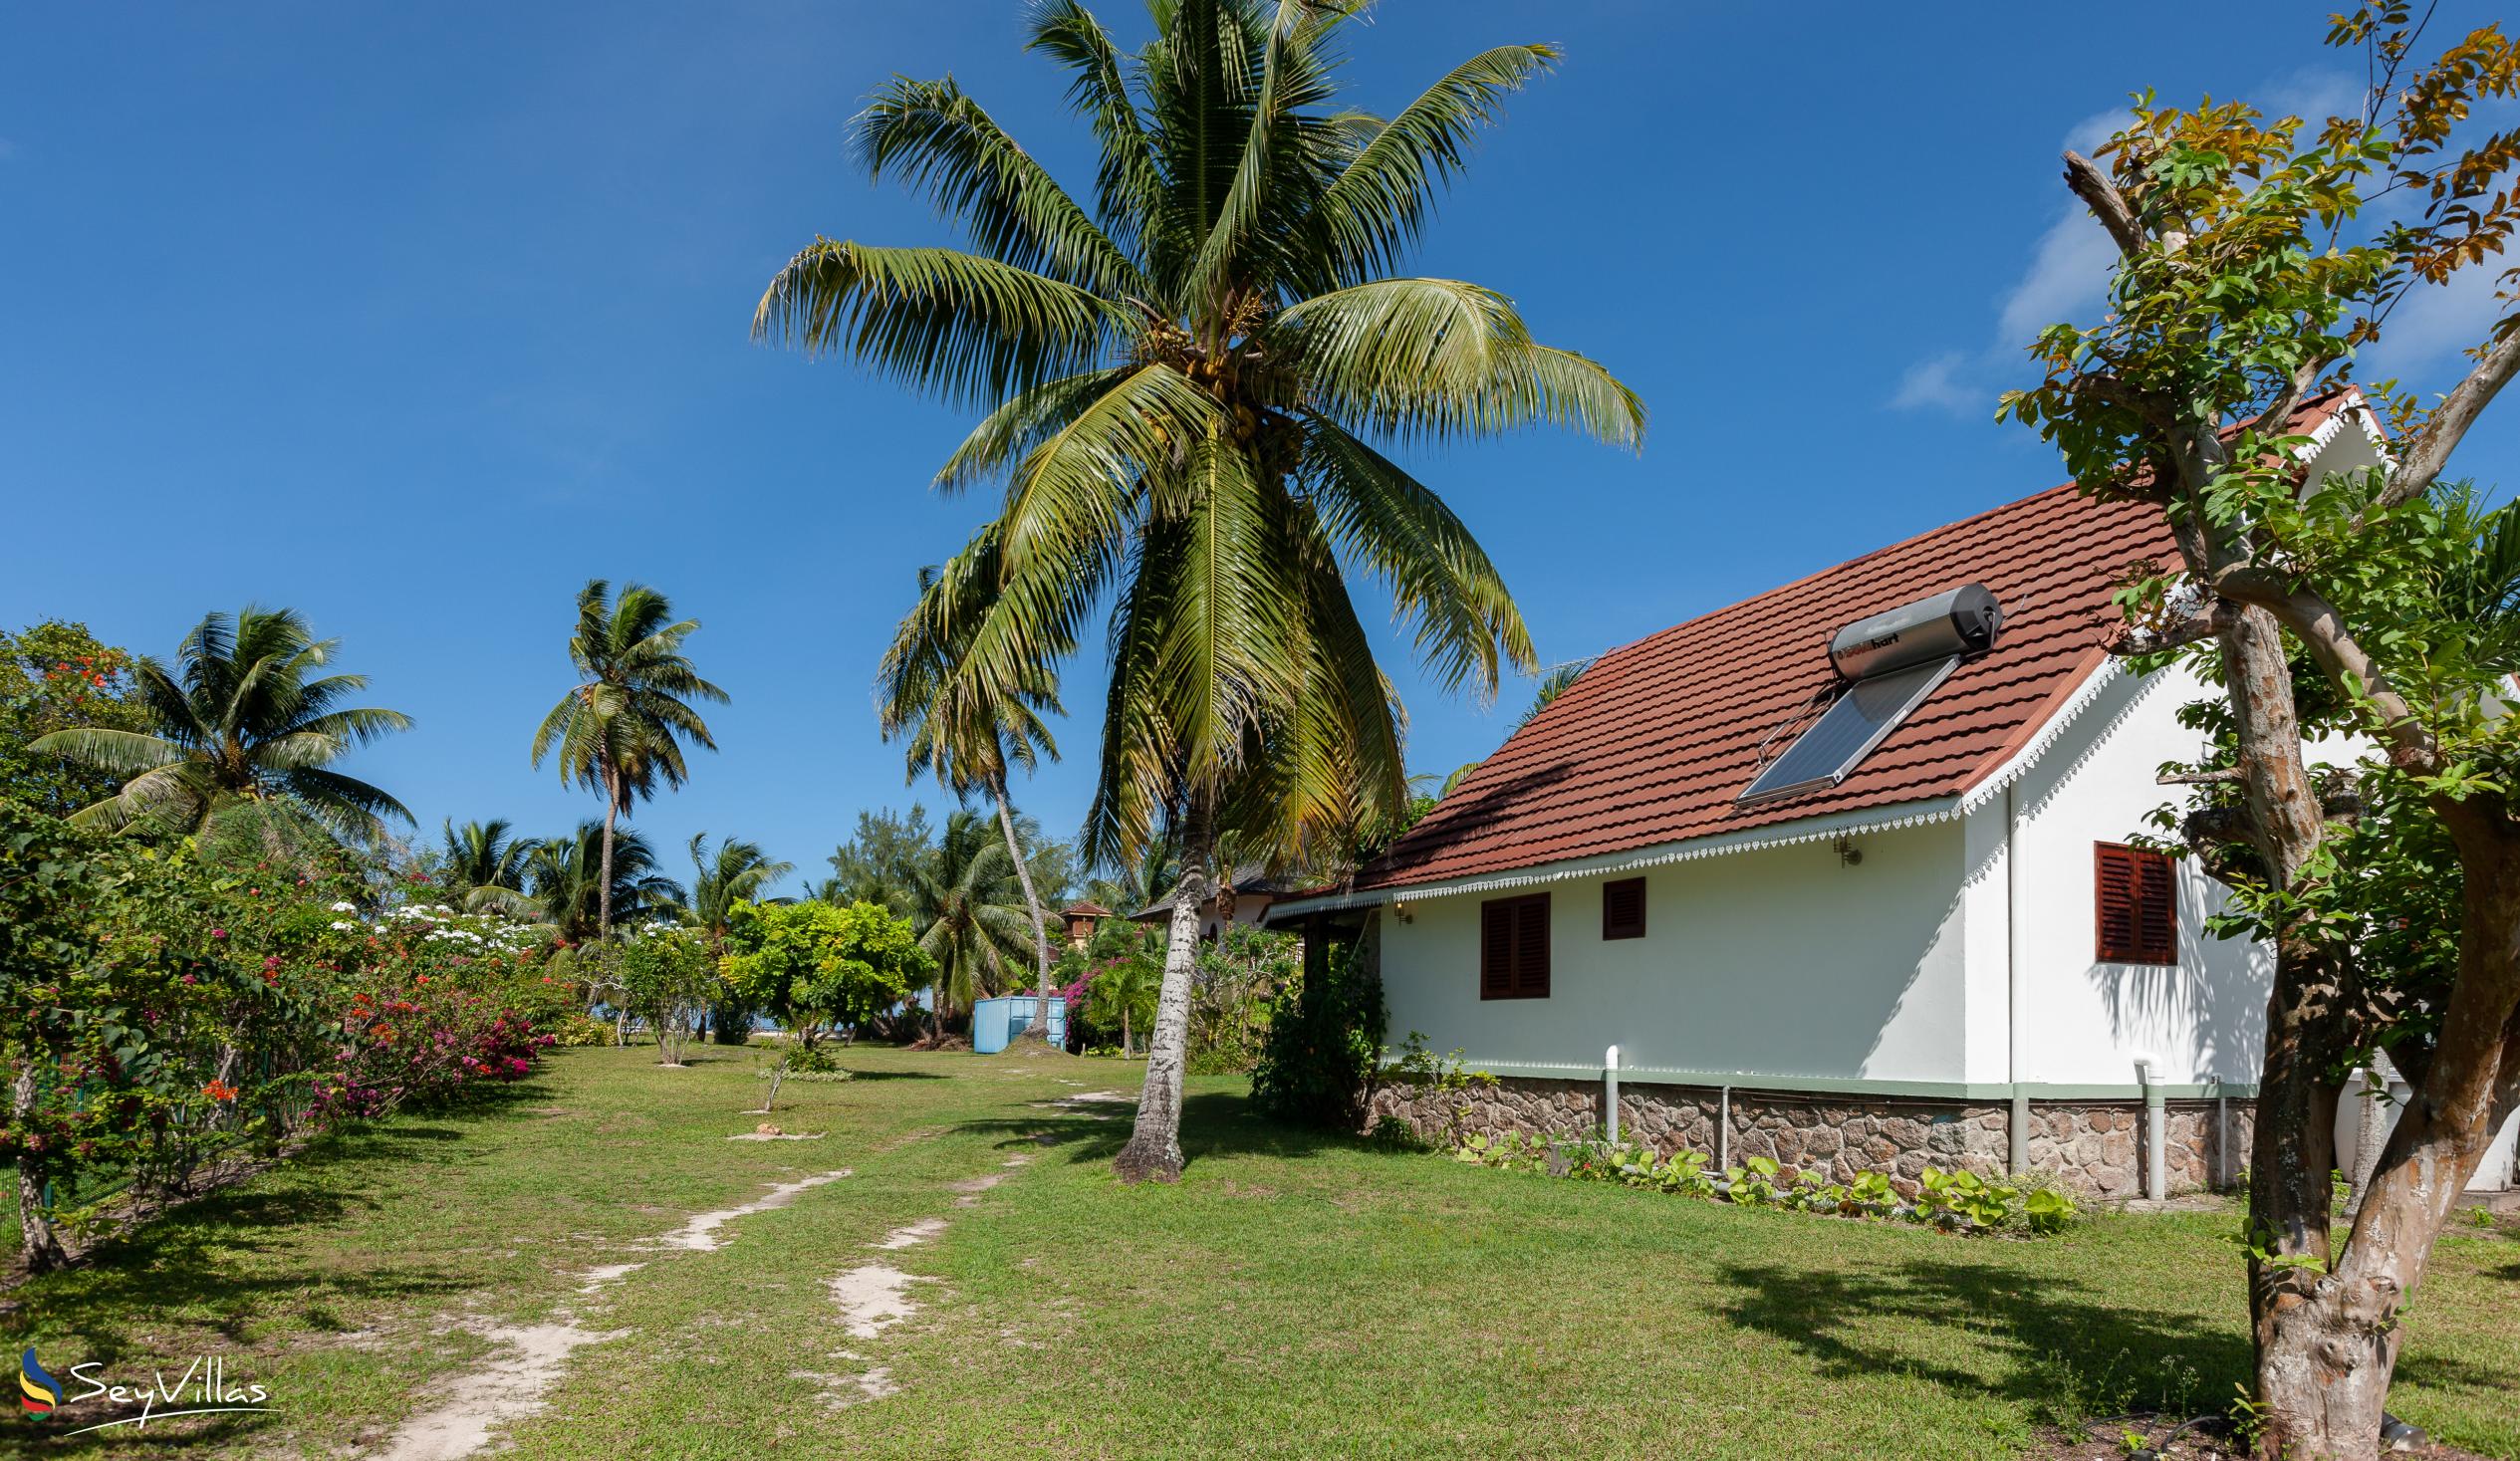 Foto 6: Villas Coco Beach - Aussenbereich - Praslin (Seychellen)